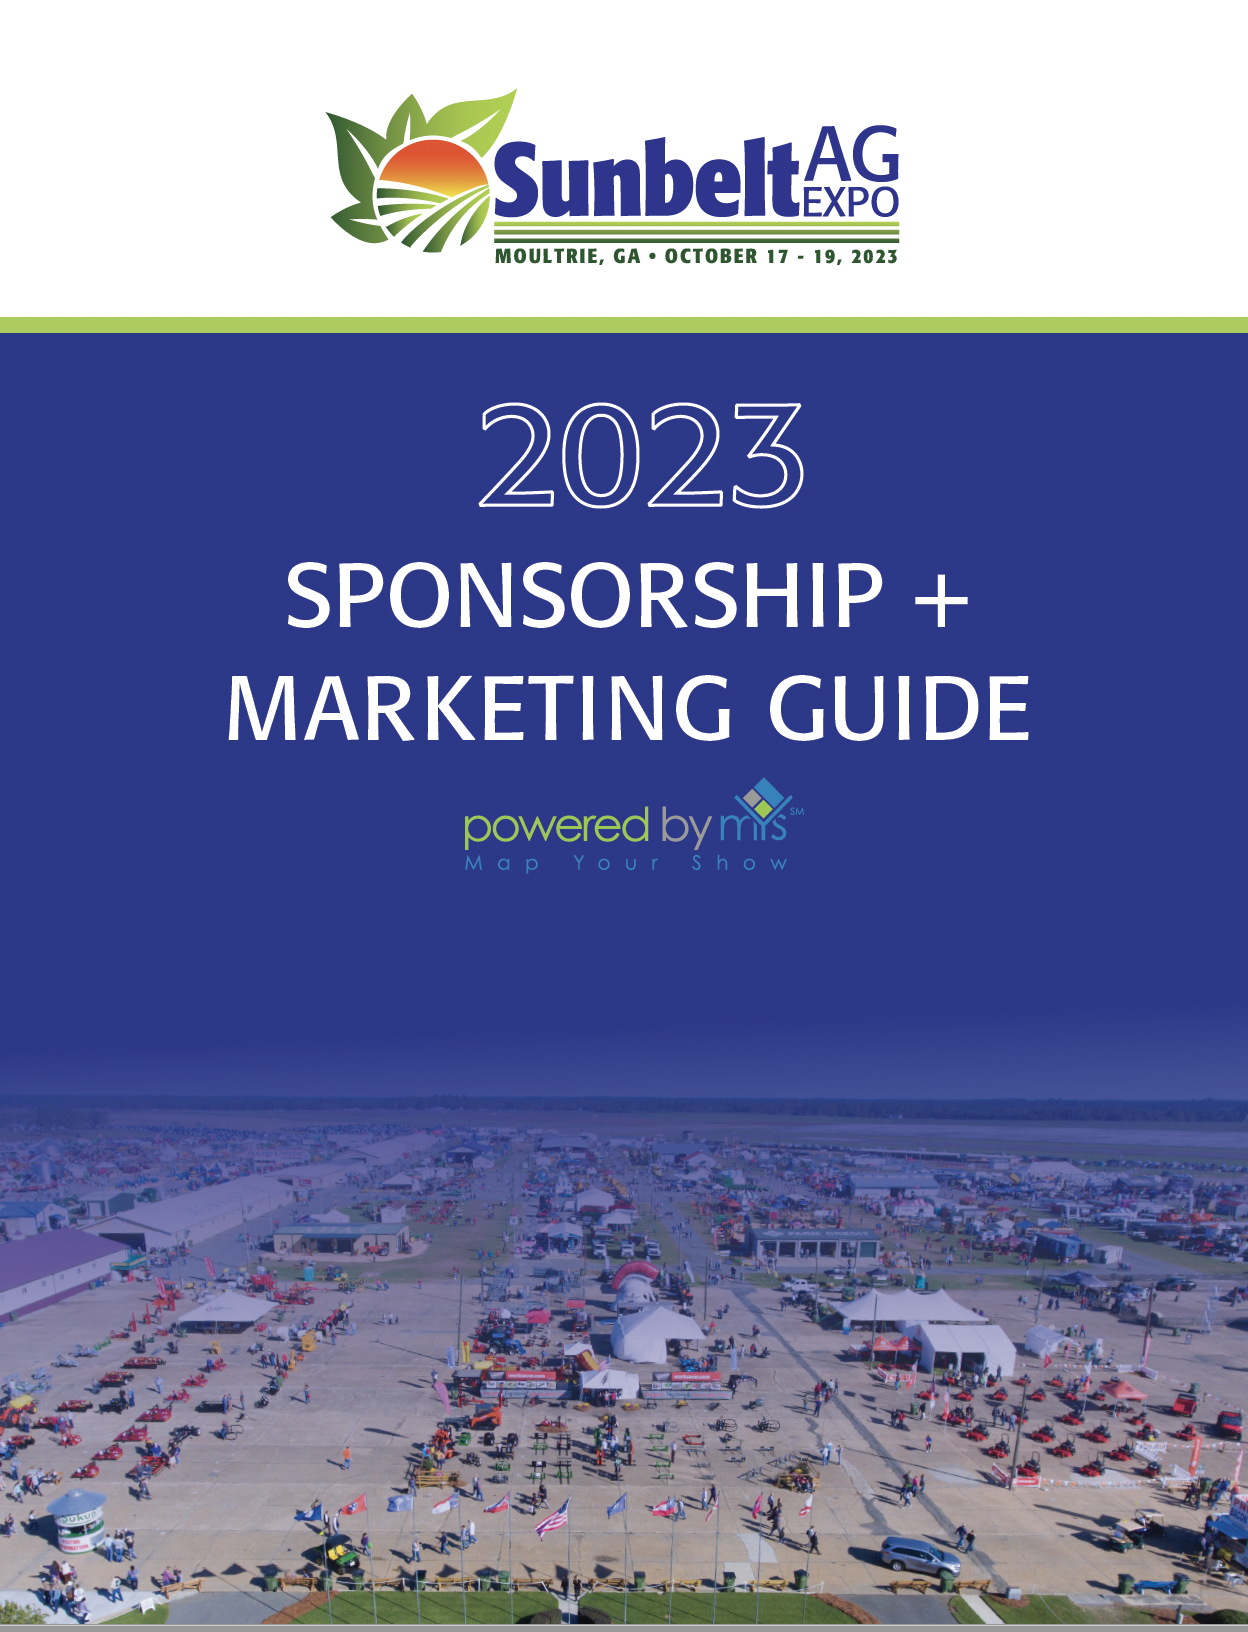 sunbelt ag expo 2023 sponsorship marketing guide